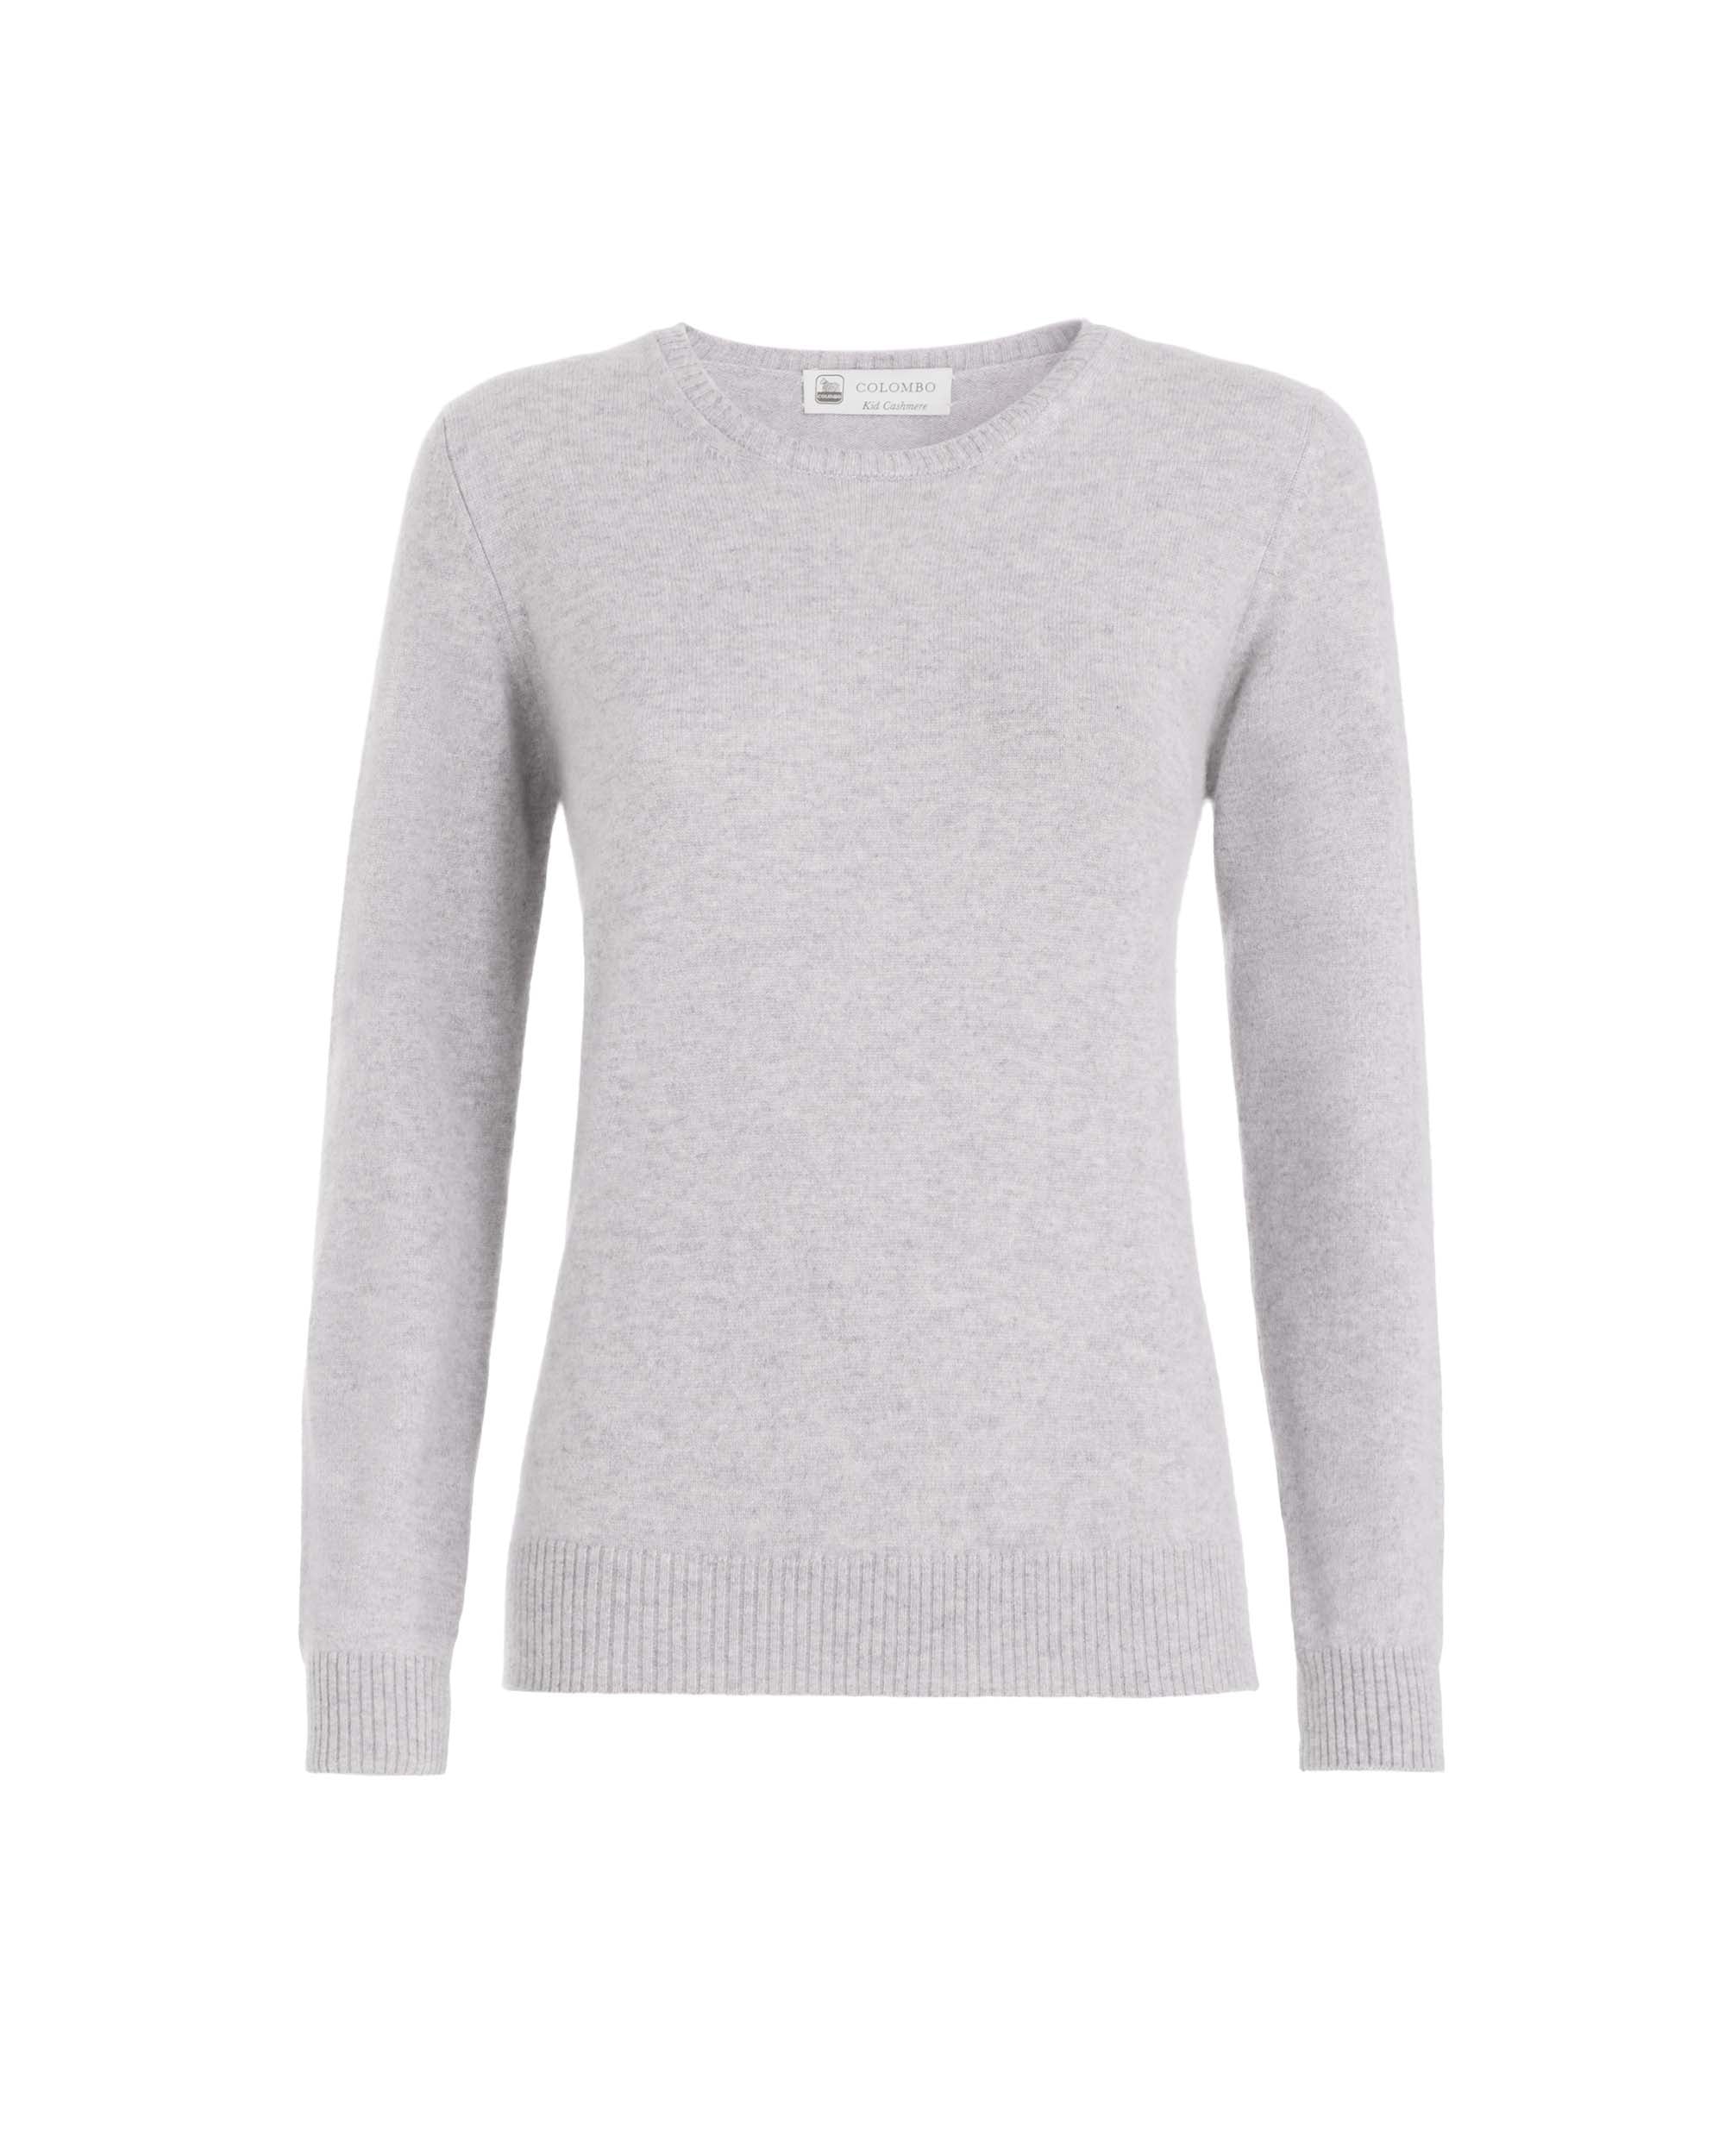 Light grey kid cashmere round-neck sweater